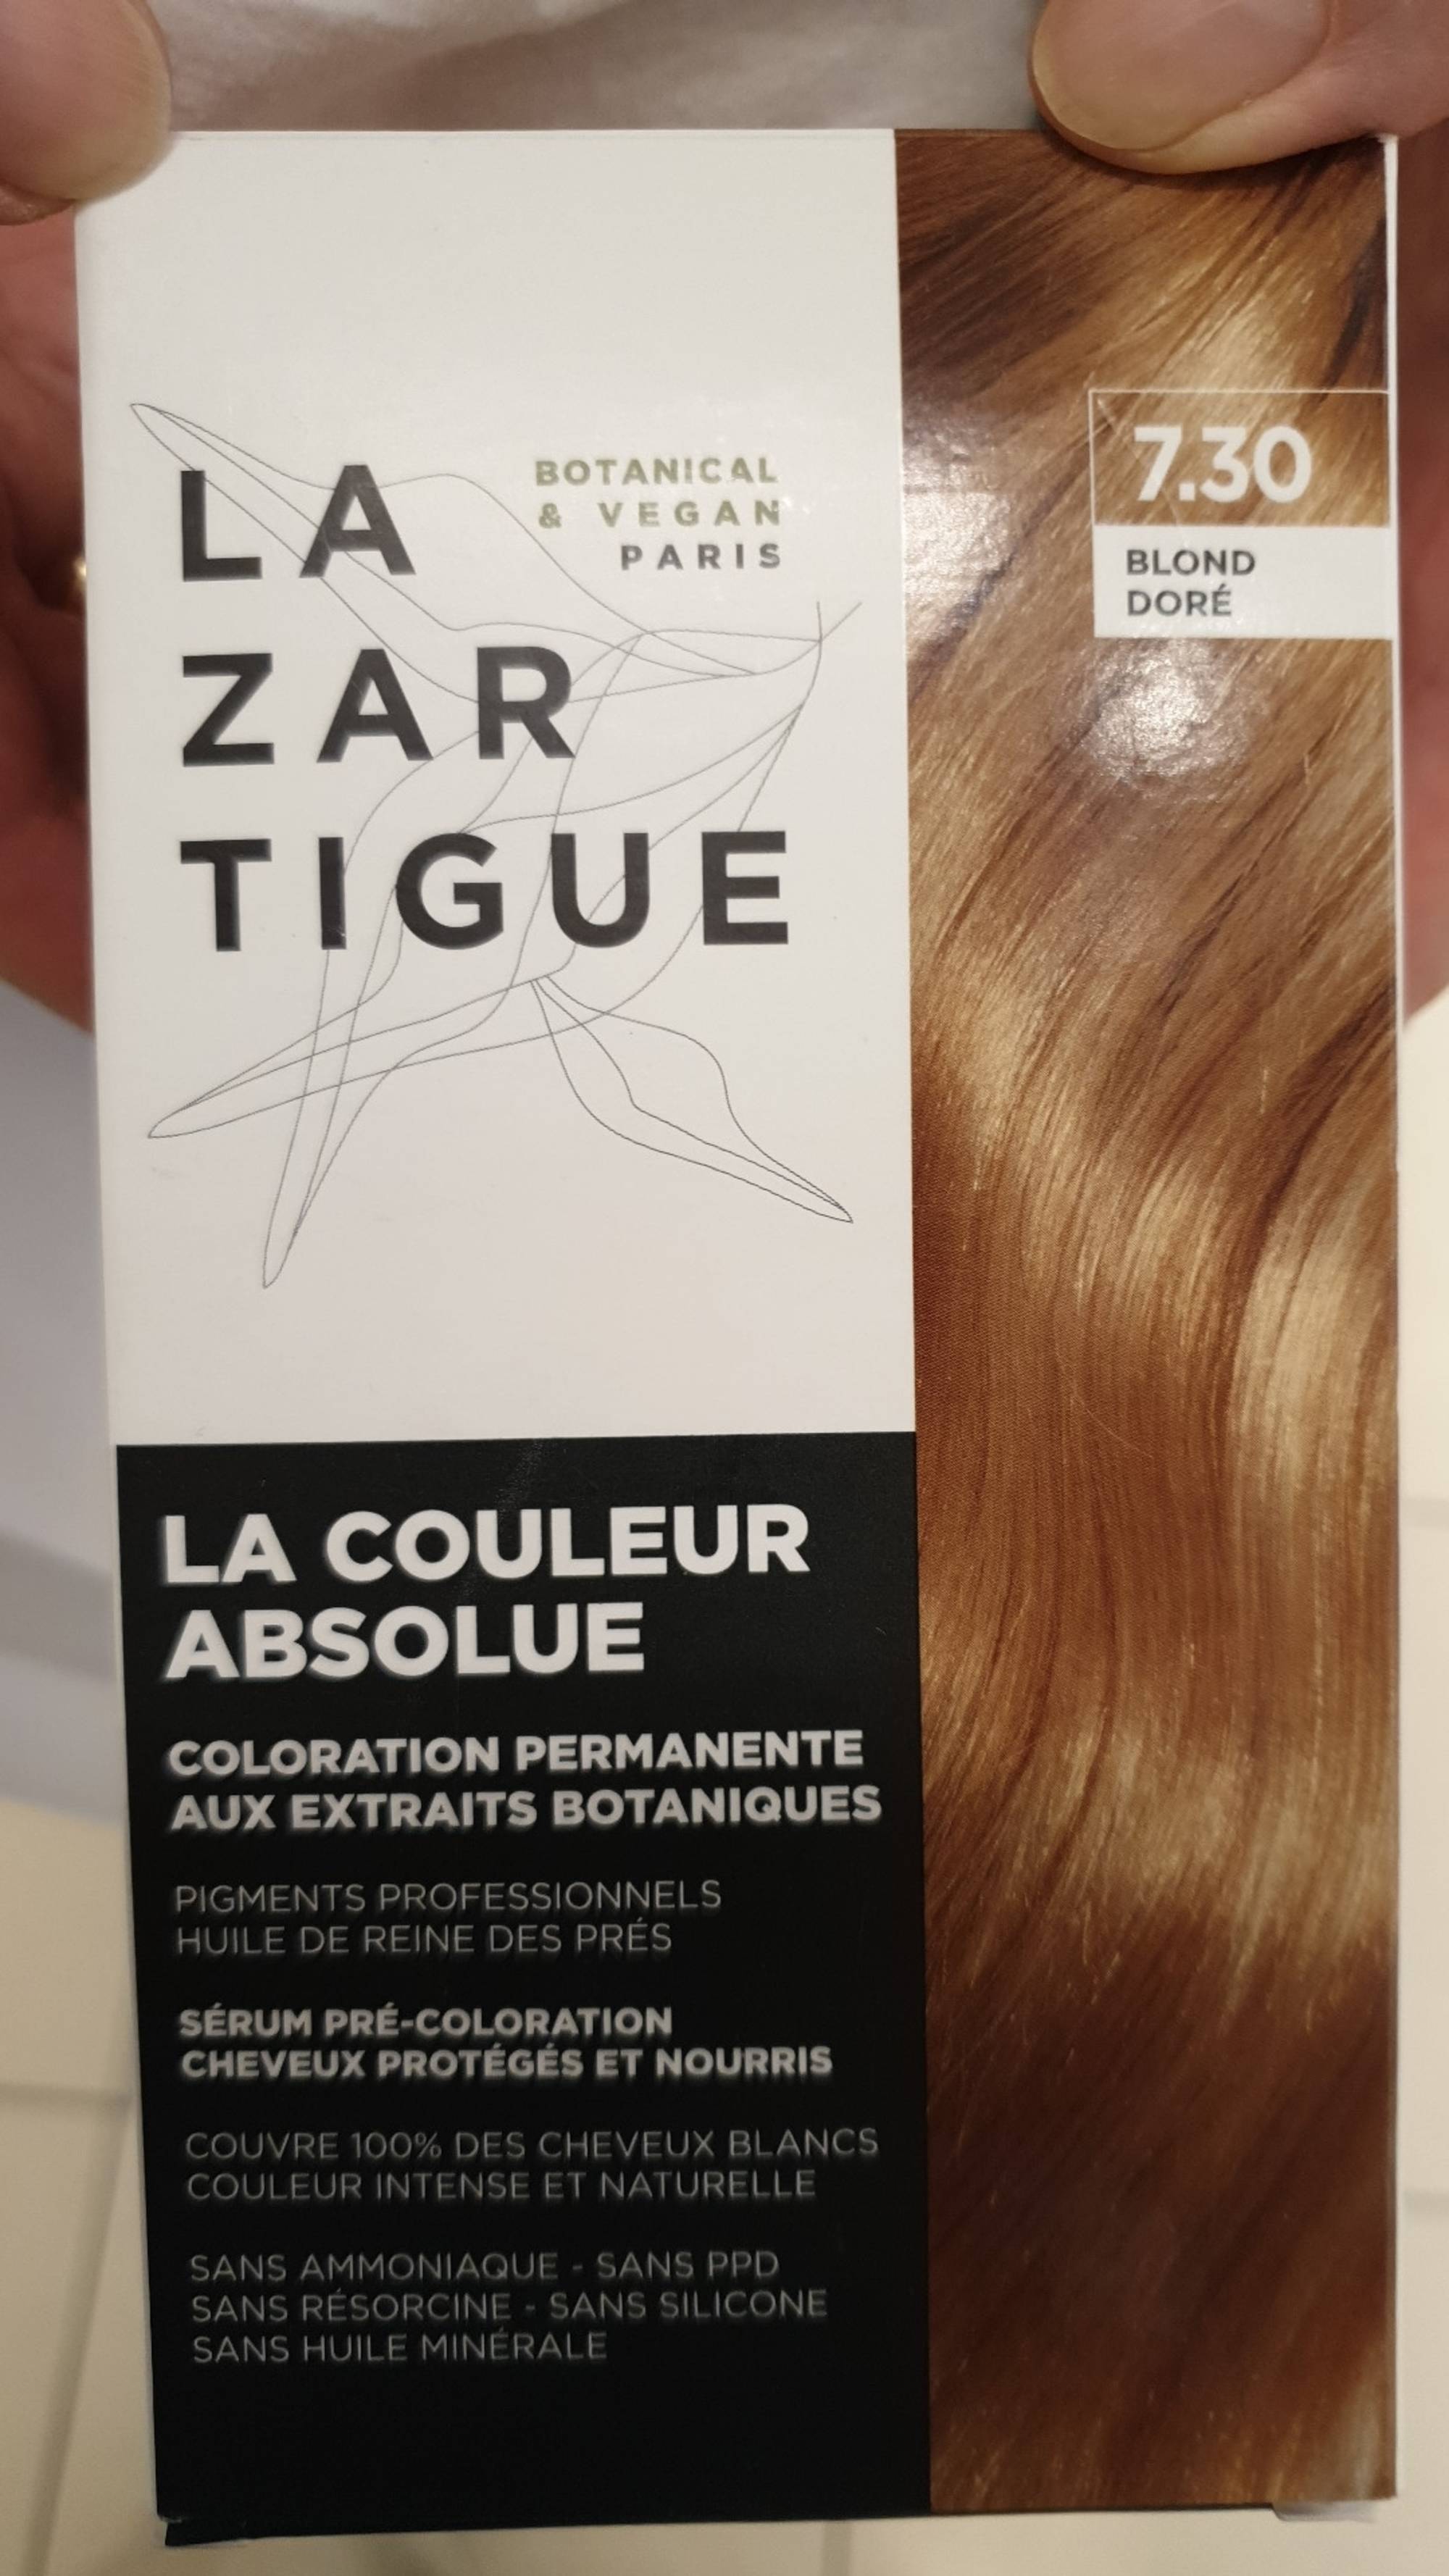 LAZARTIGUE - La couleur absolue - Coloration permanente 7.30 blond doré